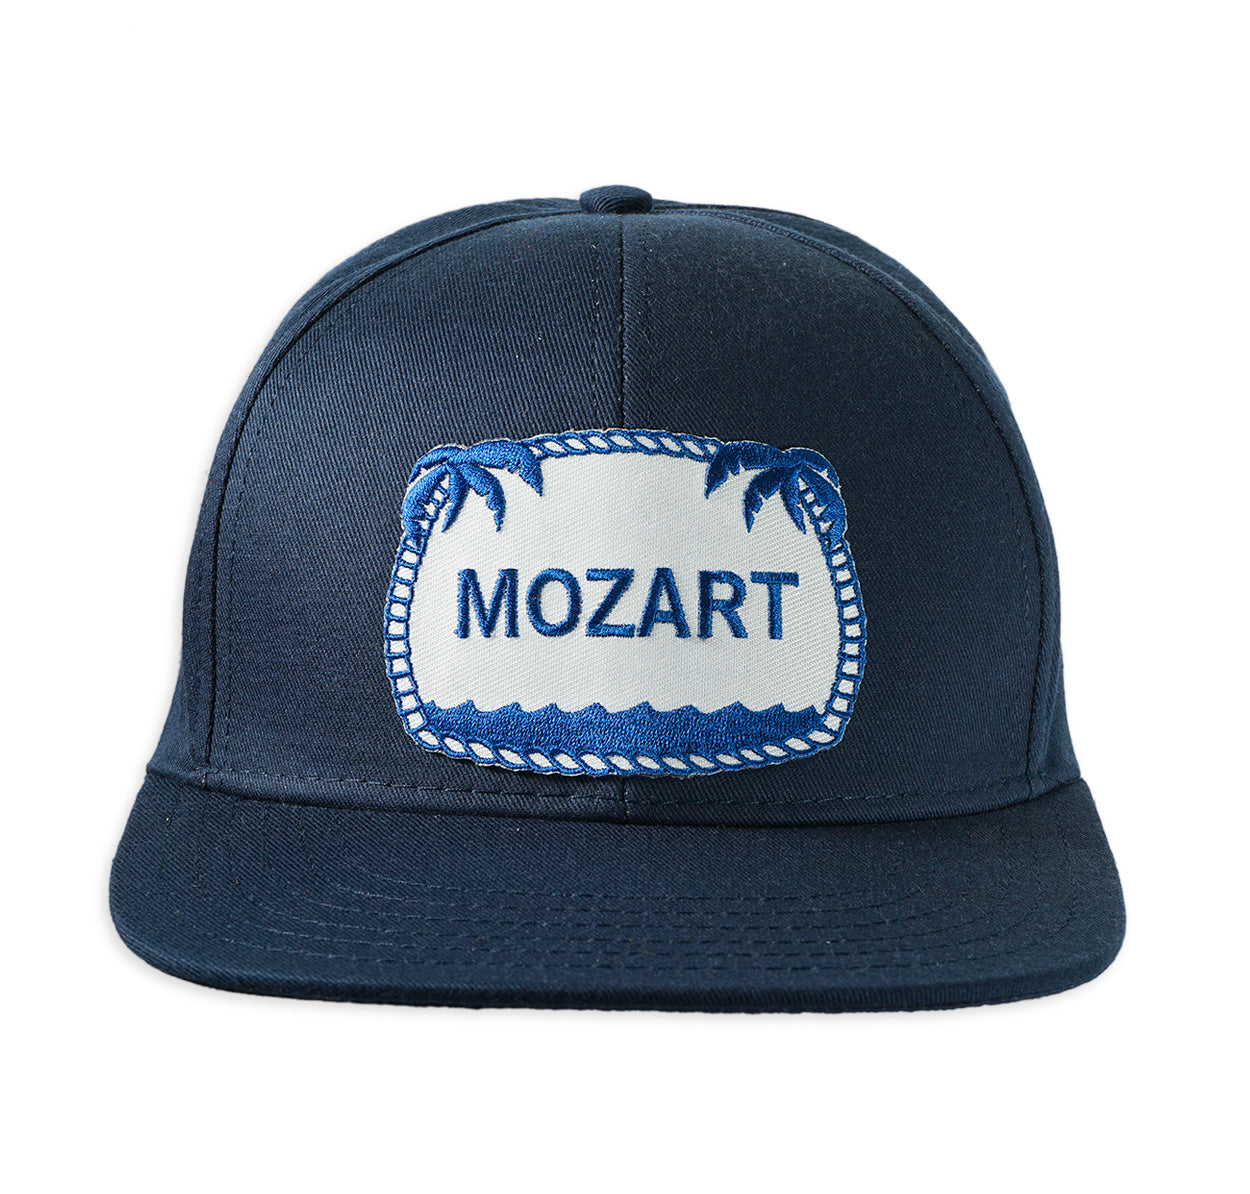 Mozart ball cap